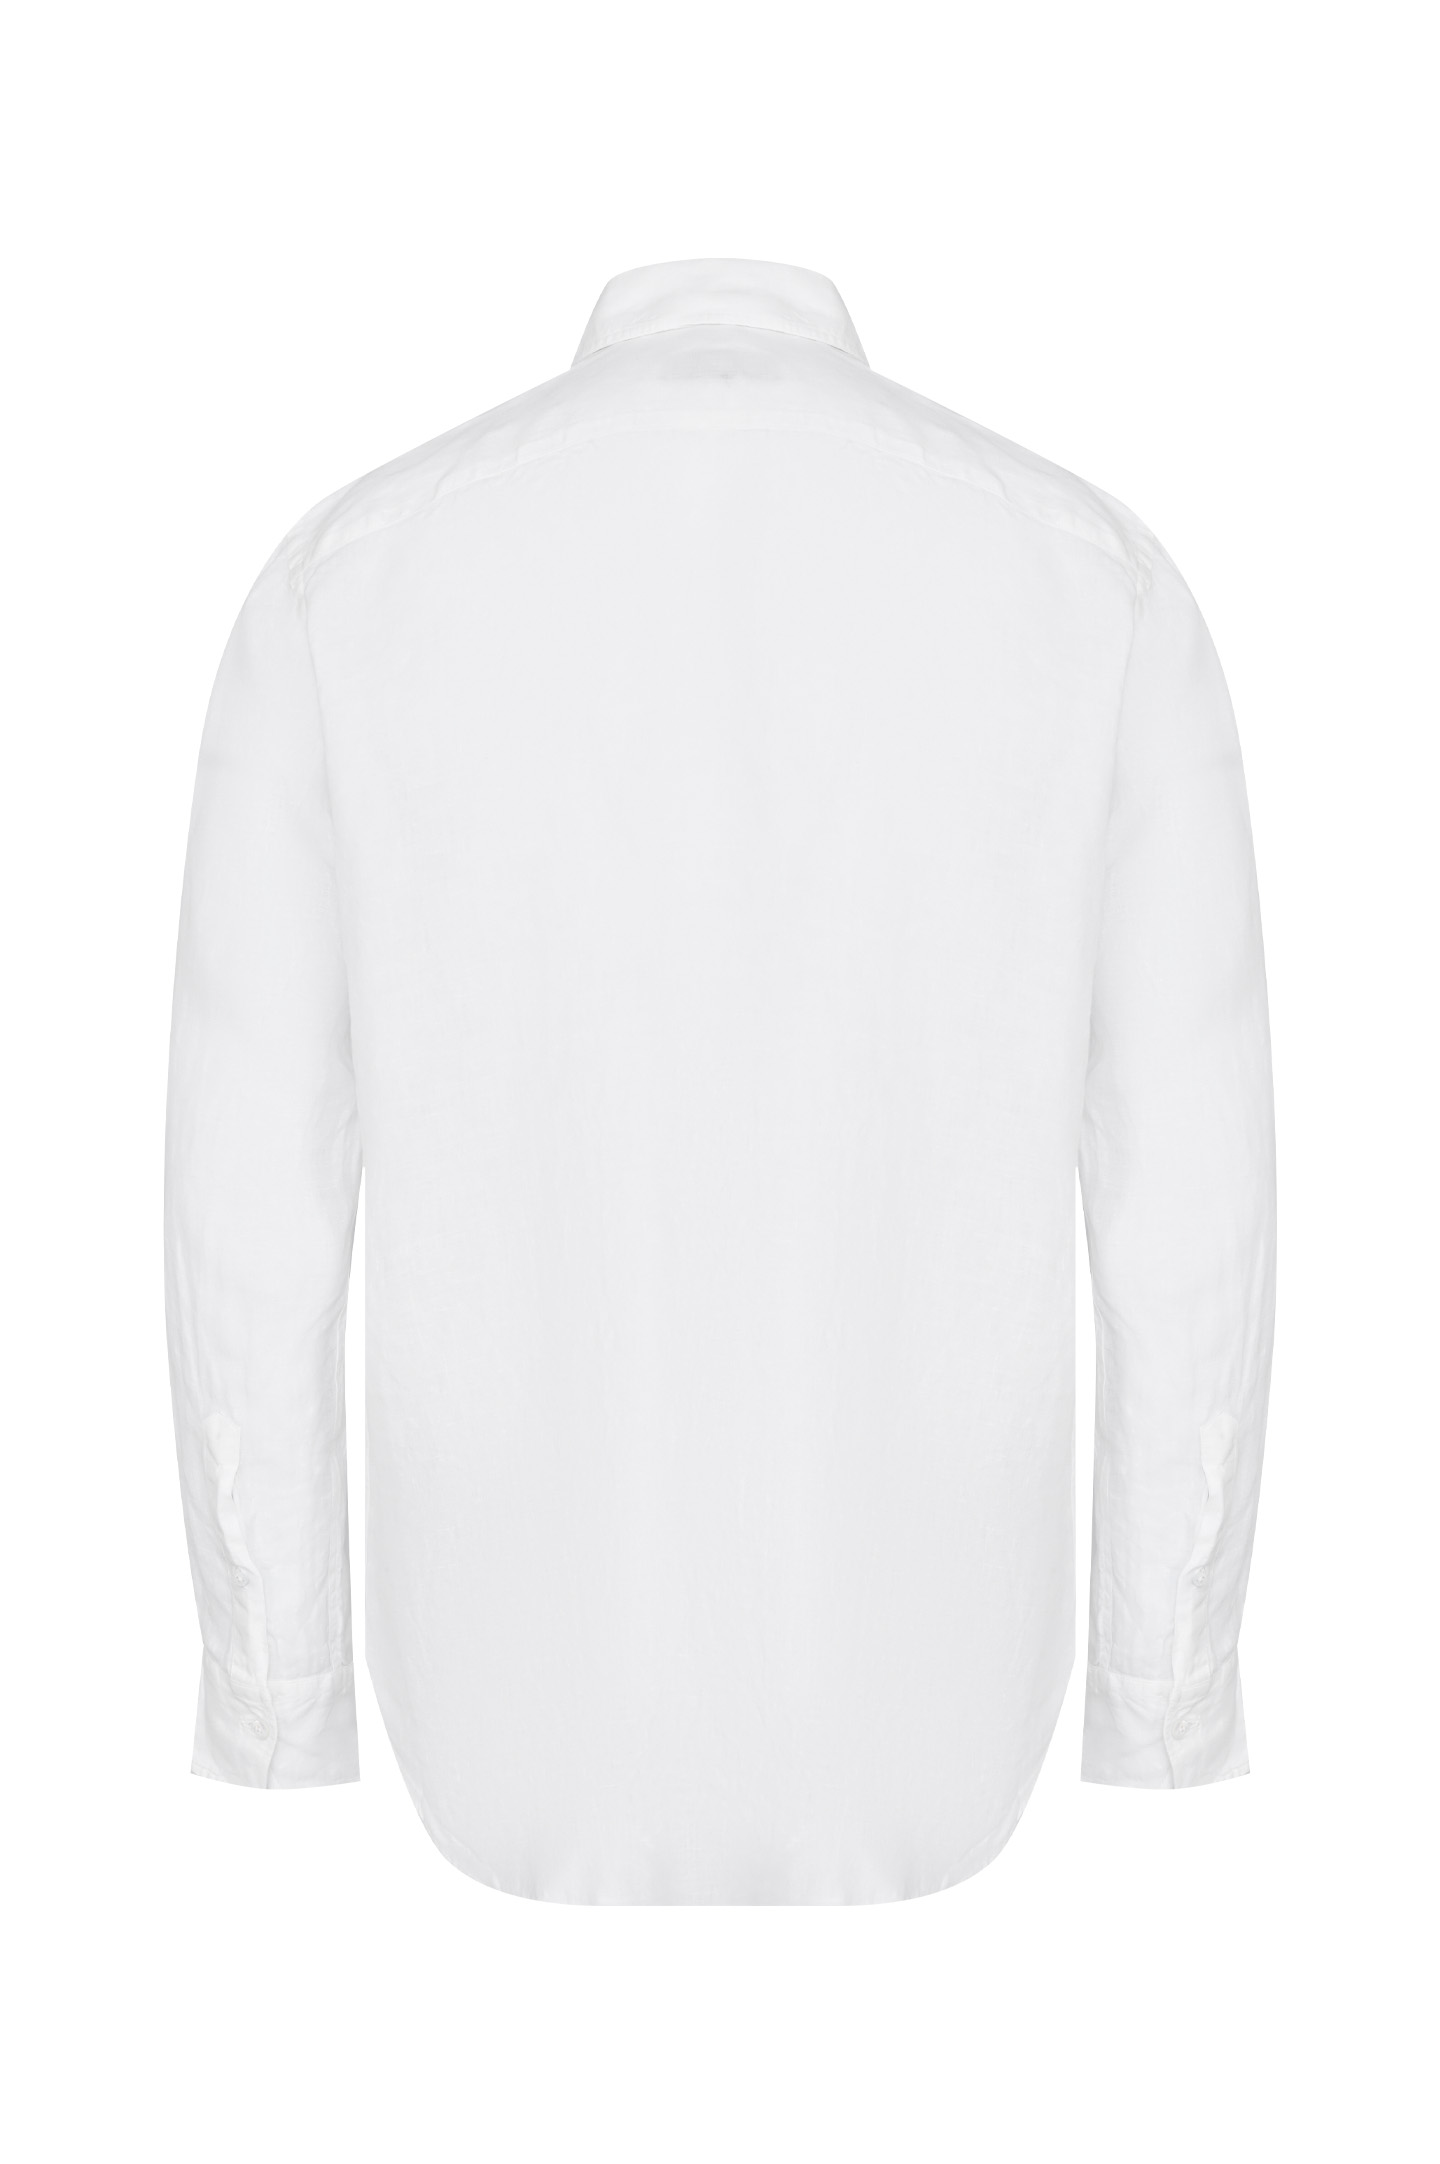 Рубашка CANALI GM02128 L756, цвет: Белый, Мужской